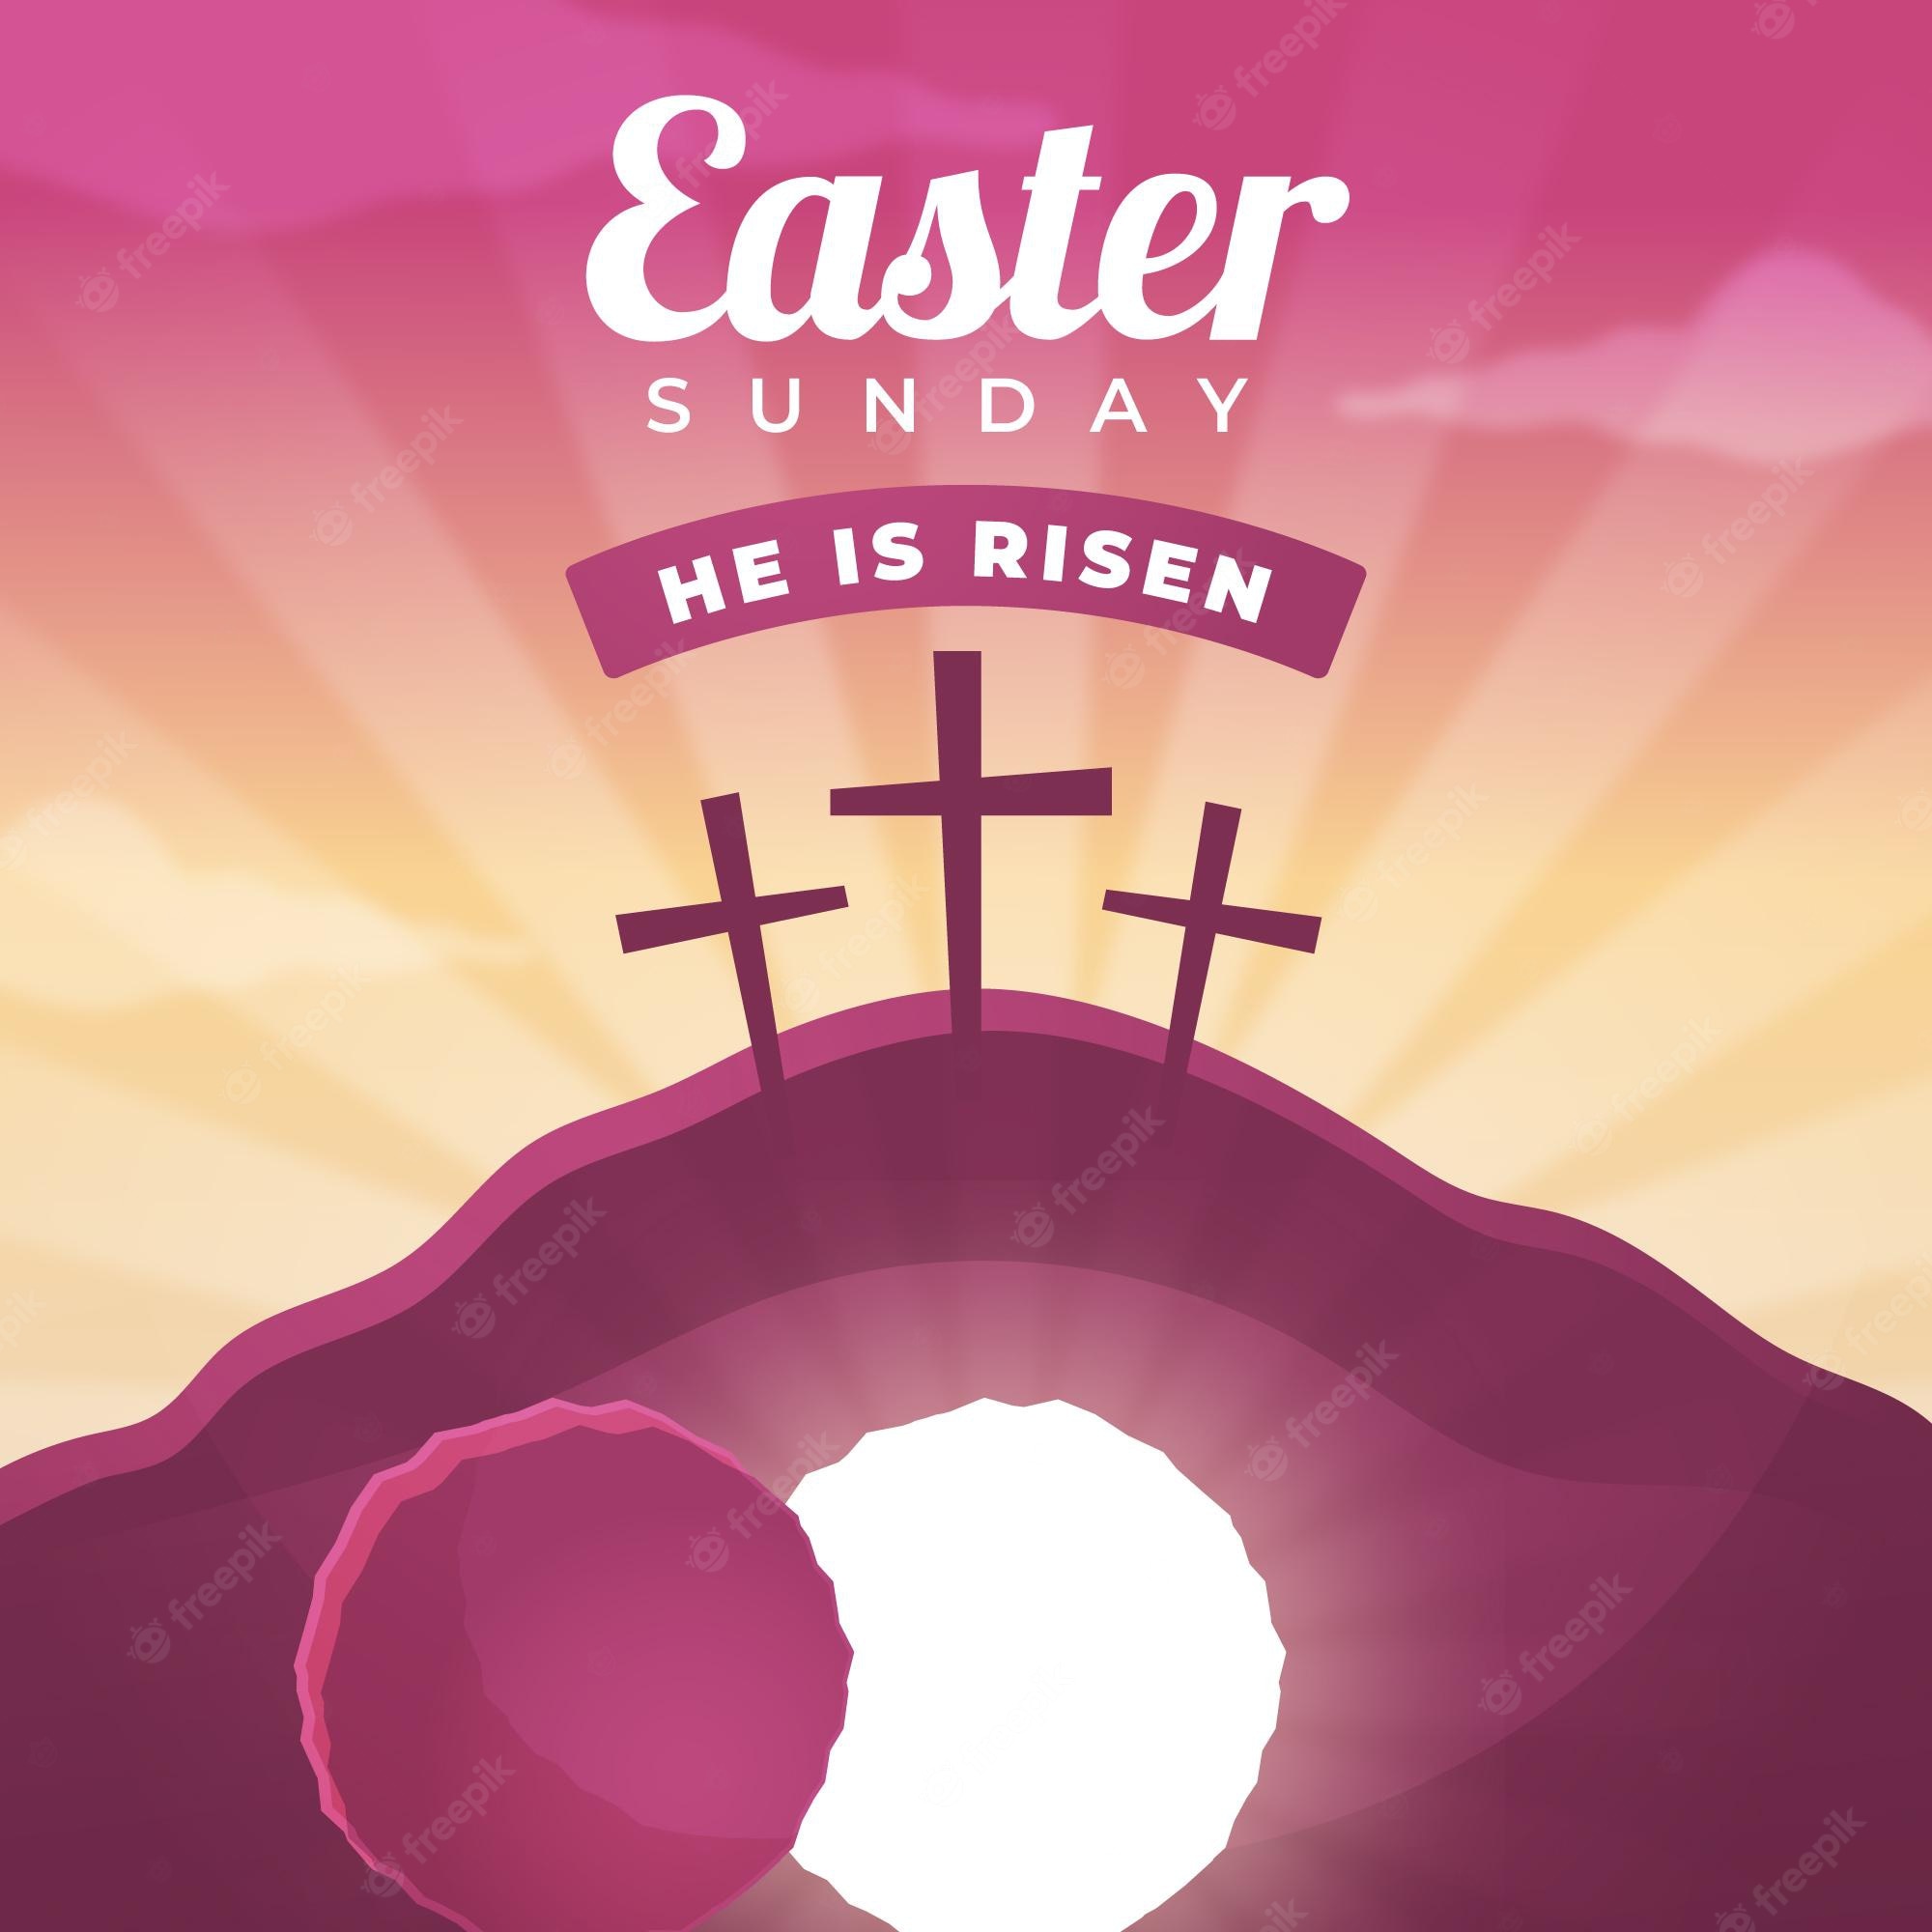 Resurrection Sunday Image